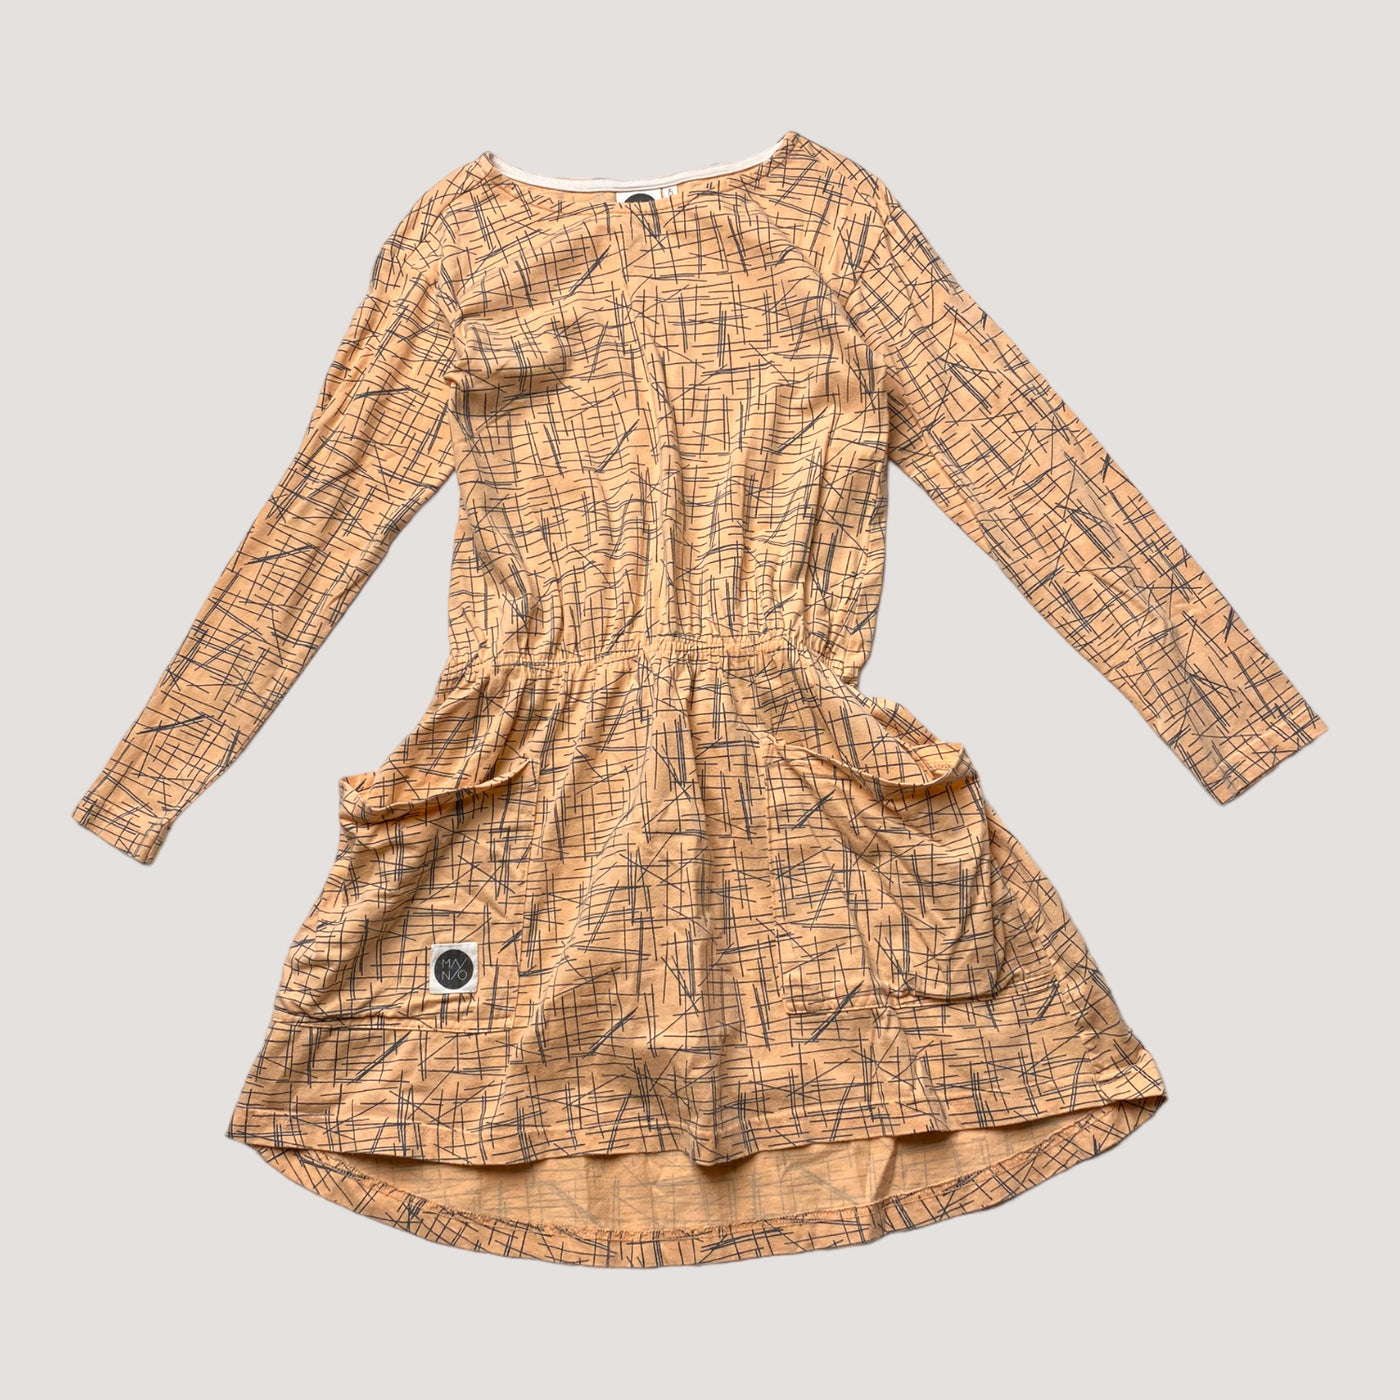 Mainio dress, squares | 134/140cm